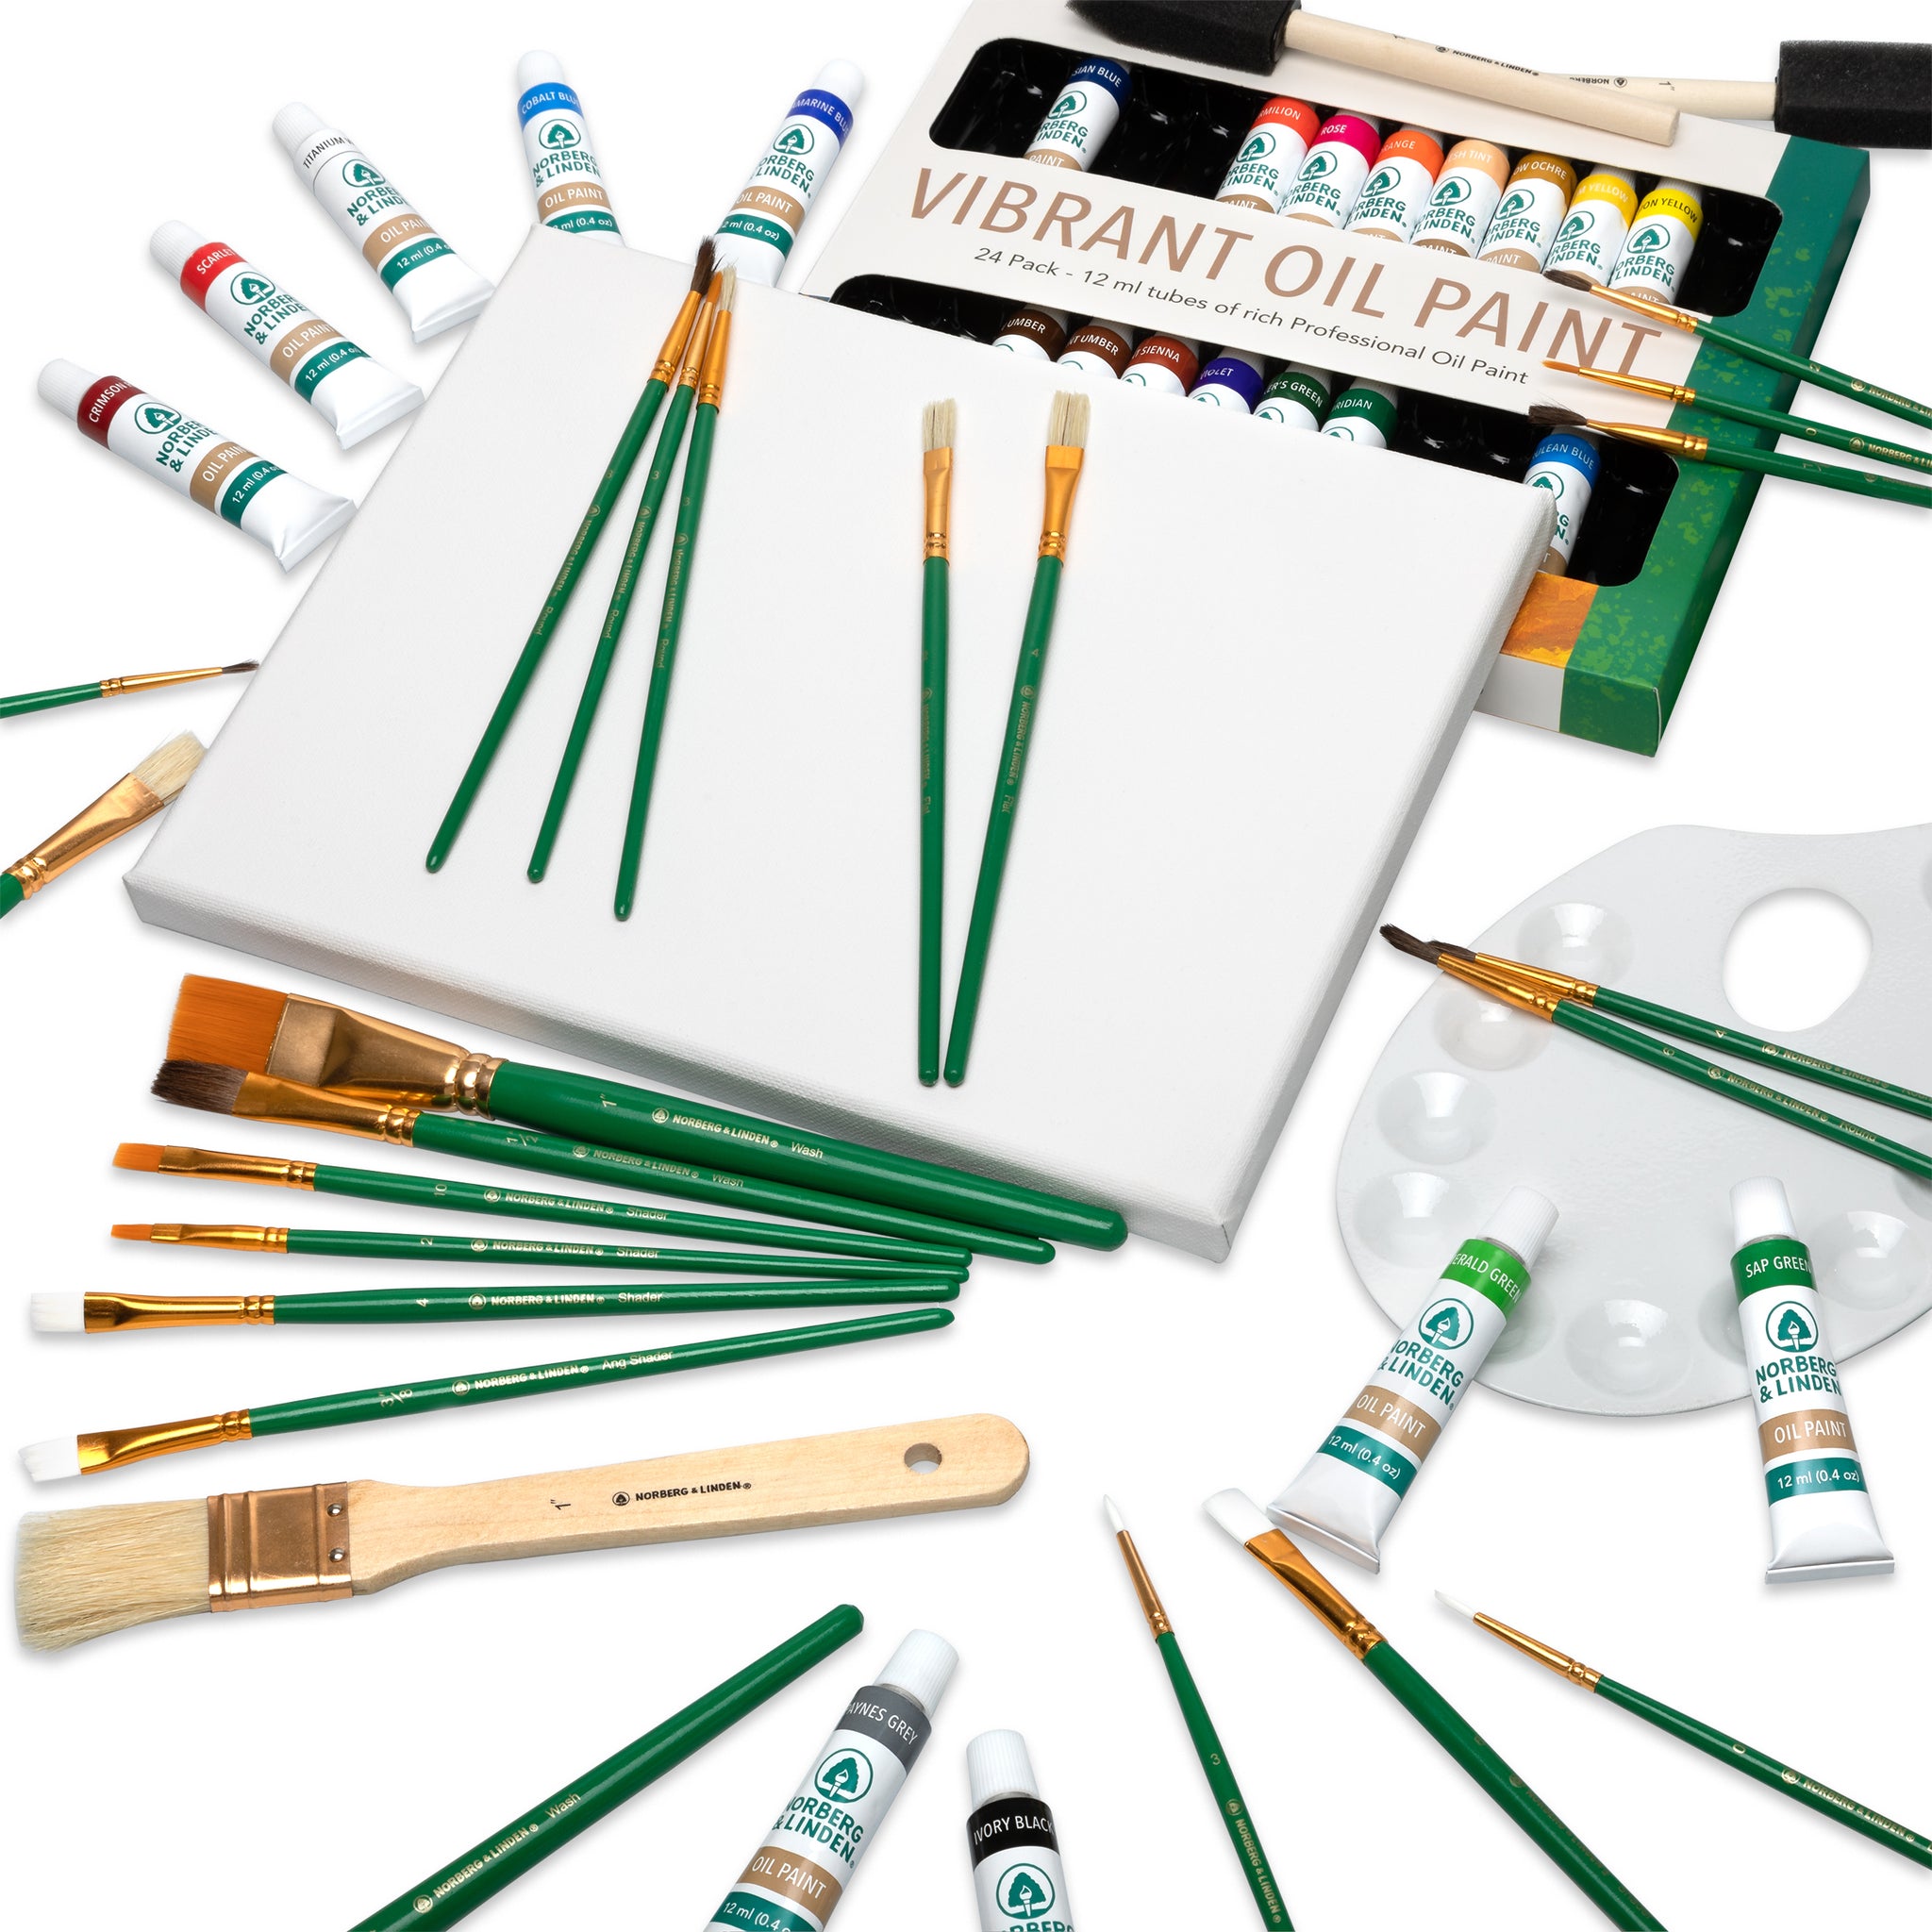 XXL Oil Paint Set - 24 Paints, 25 Brushes, 1 Canvas, and Art Palette